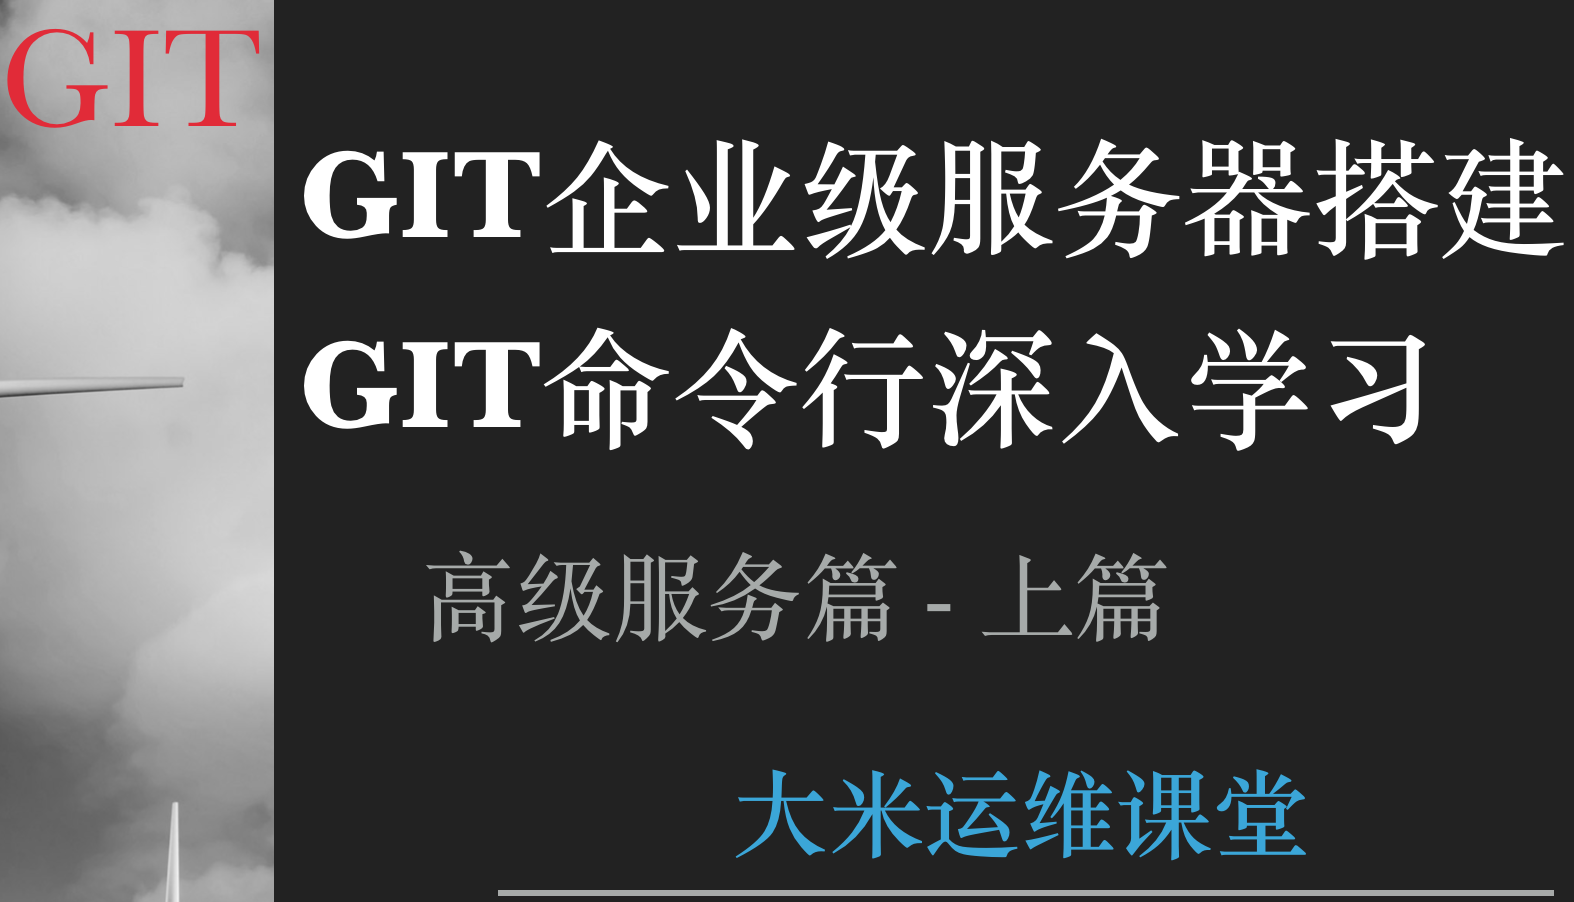 GIT & GIT企业级服务器 - 高级服务篇（上篇） - 大米运维视频课程